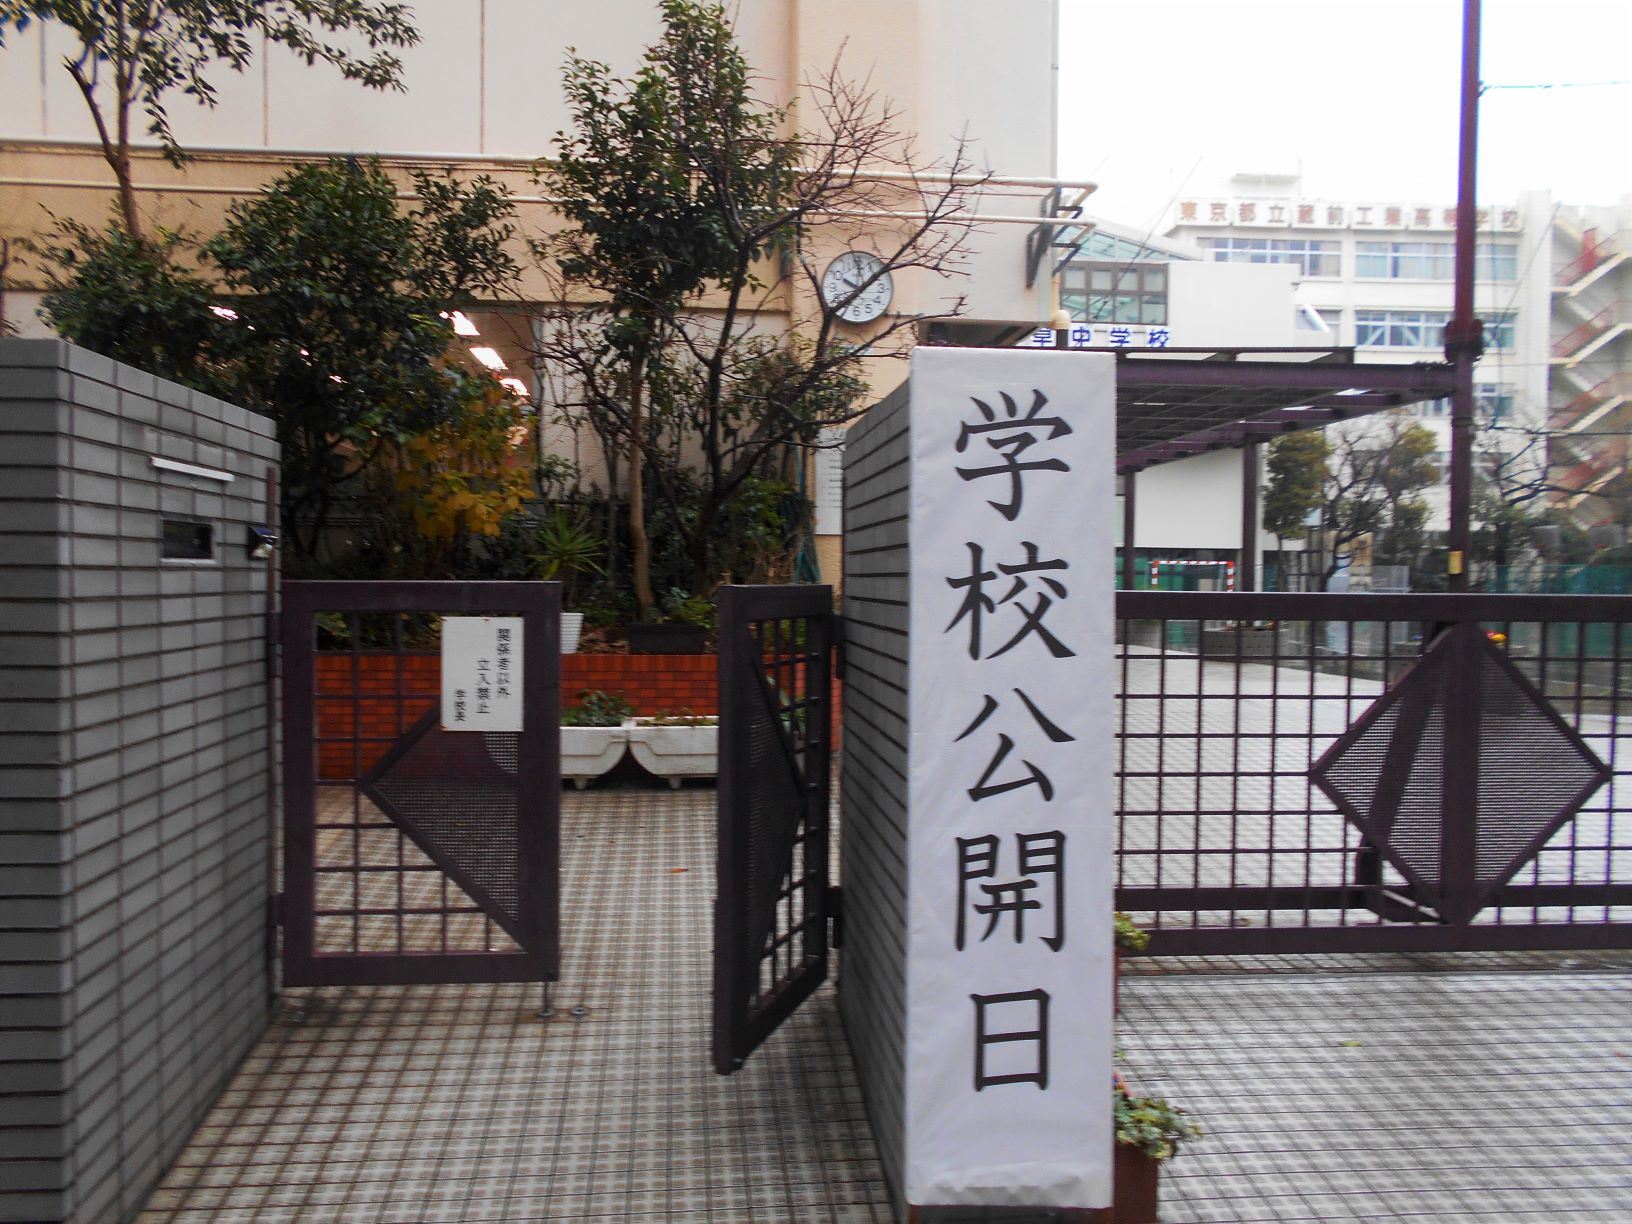 百人一首大会開催中の浅草中学入り口の画像。